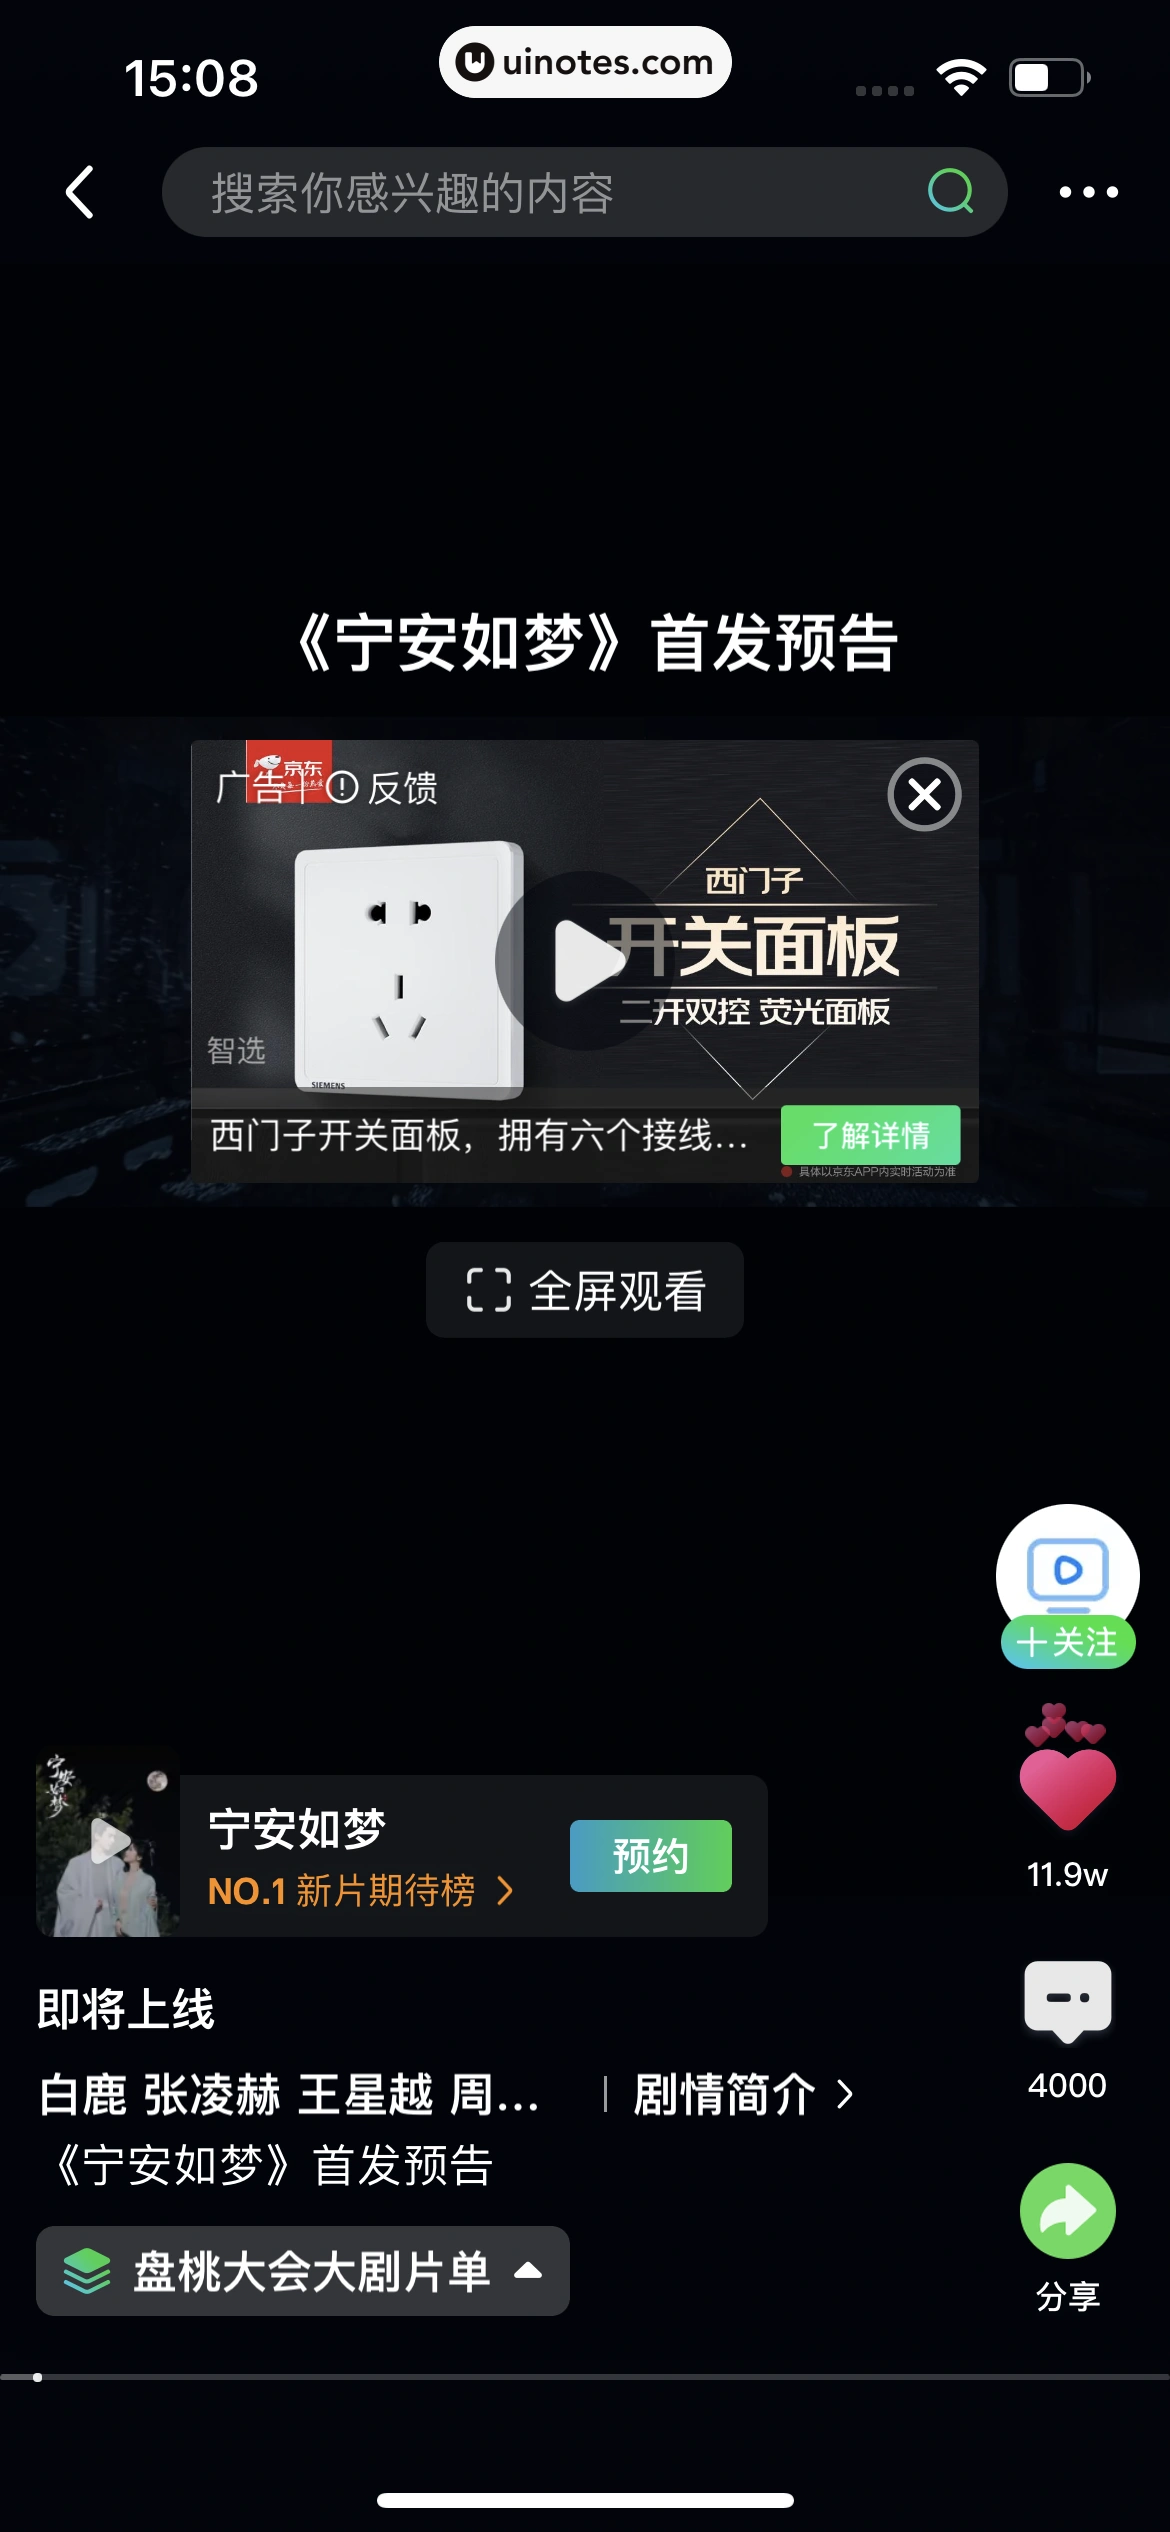 爱奇艺 App 截图 053 - UI Notes